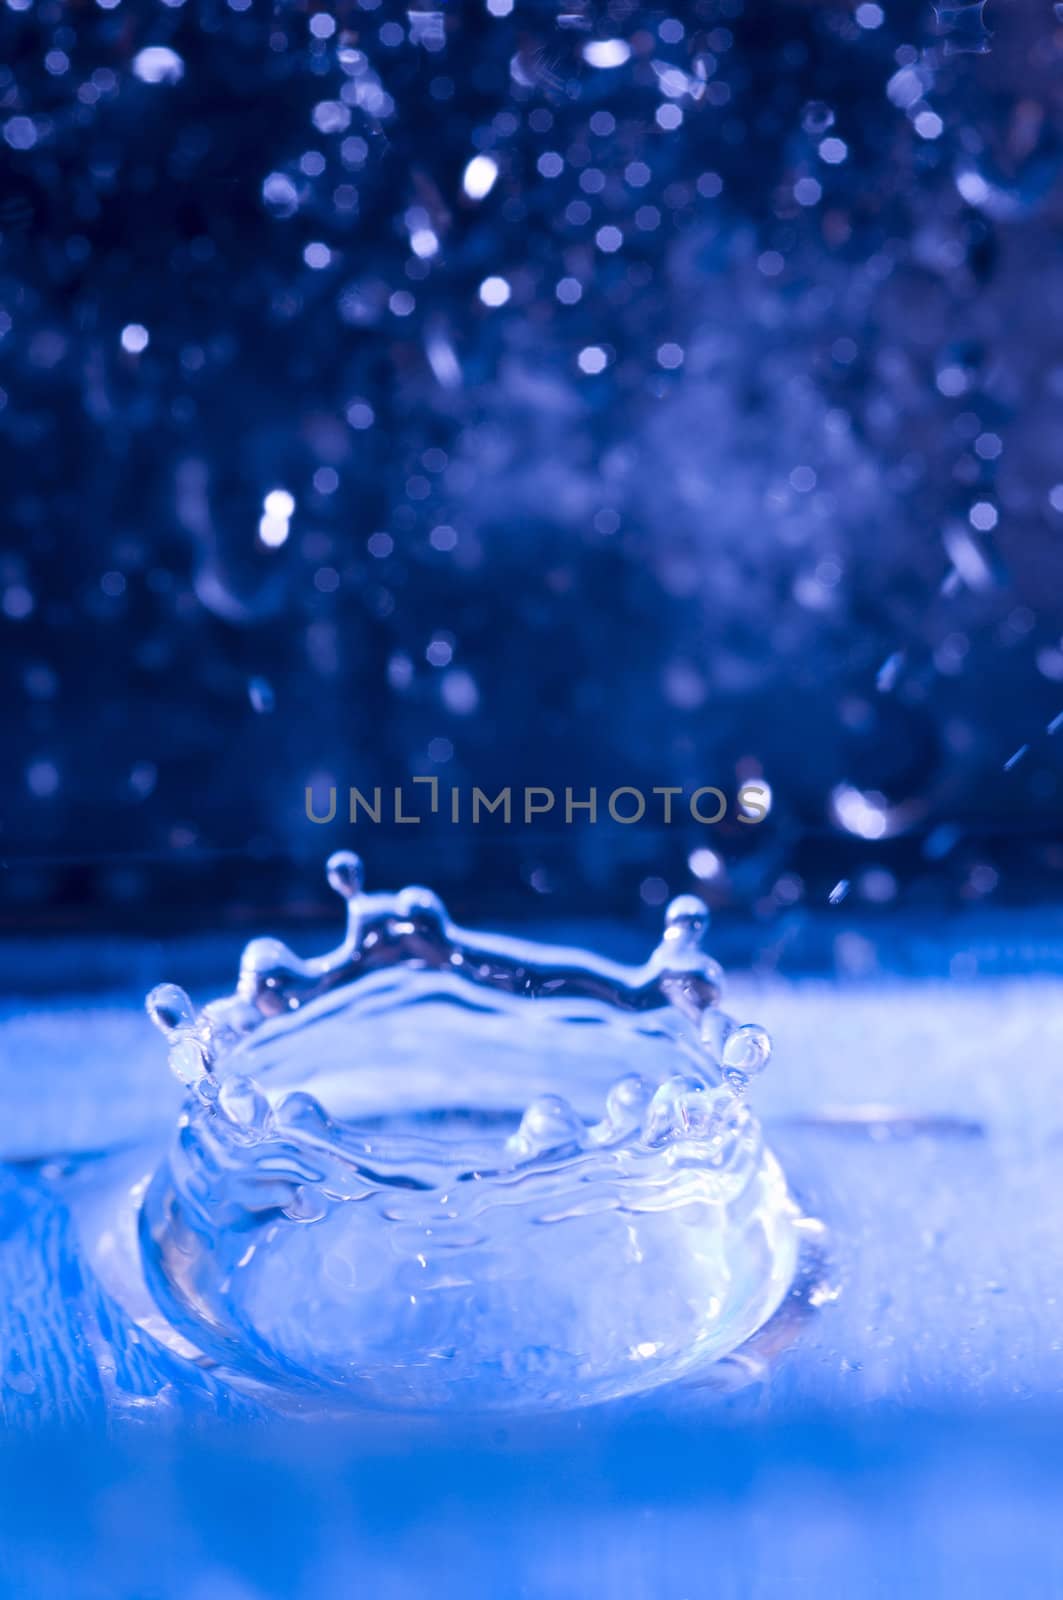 Abstract water drops close up